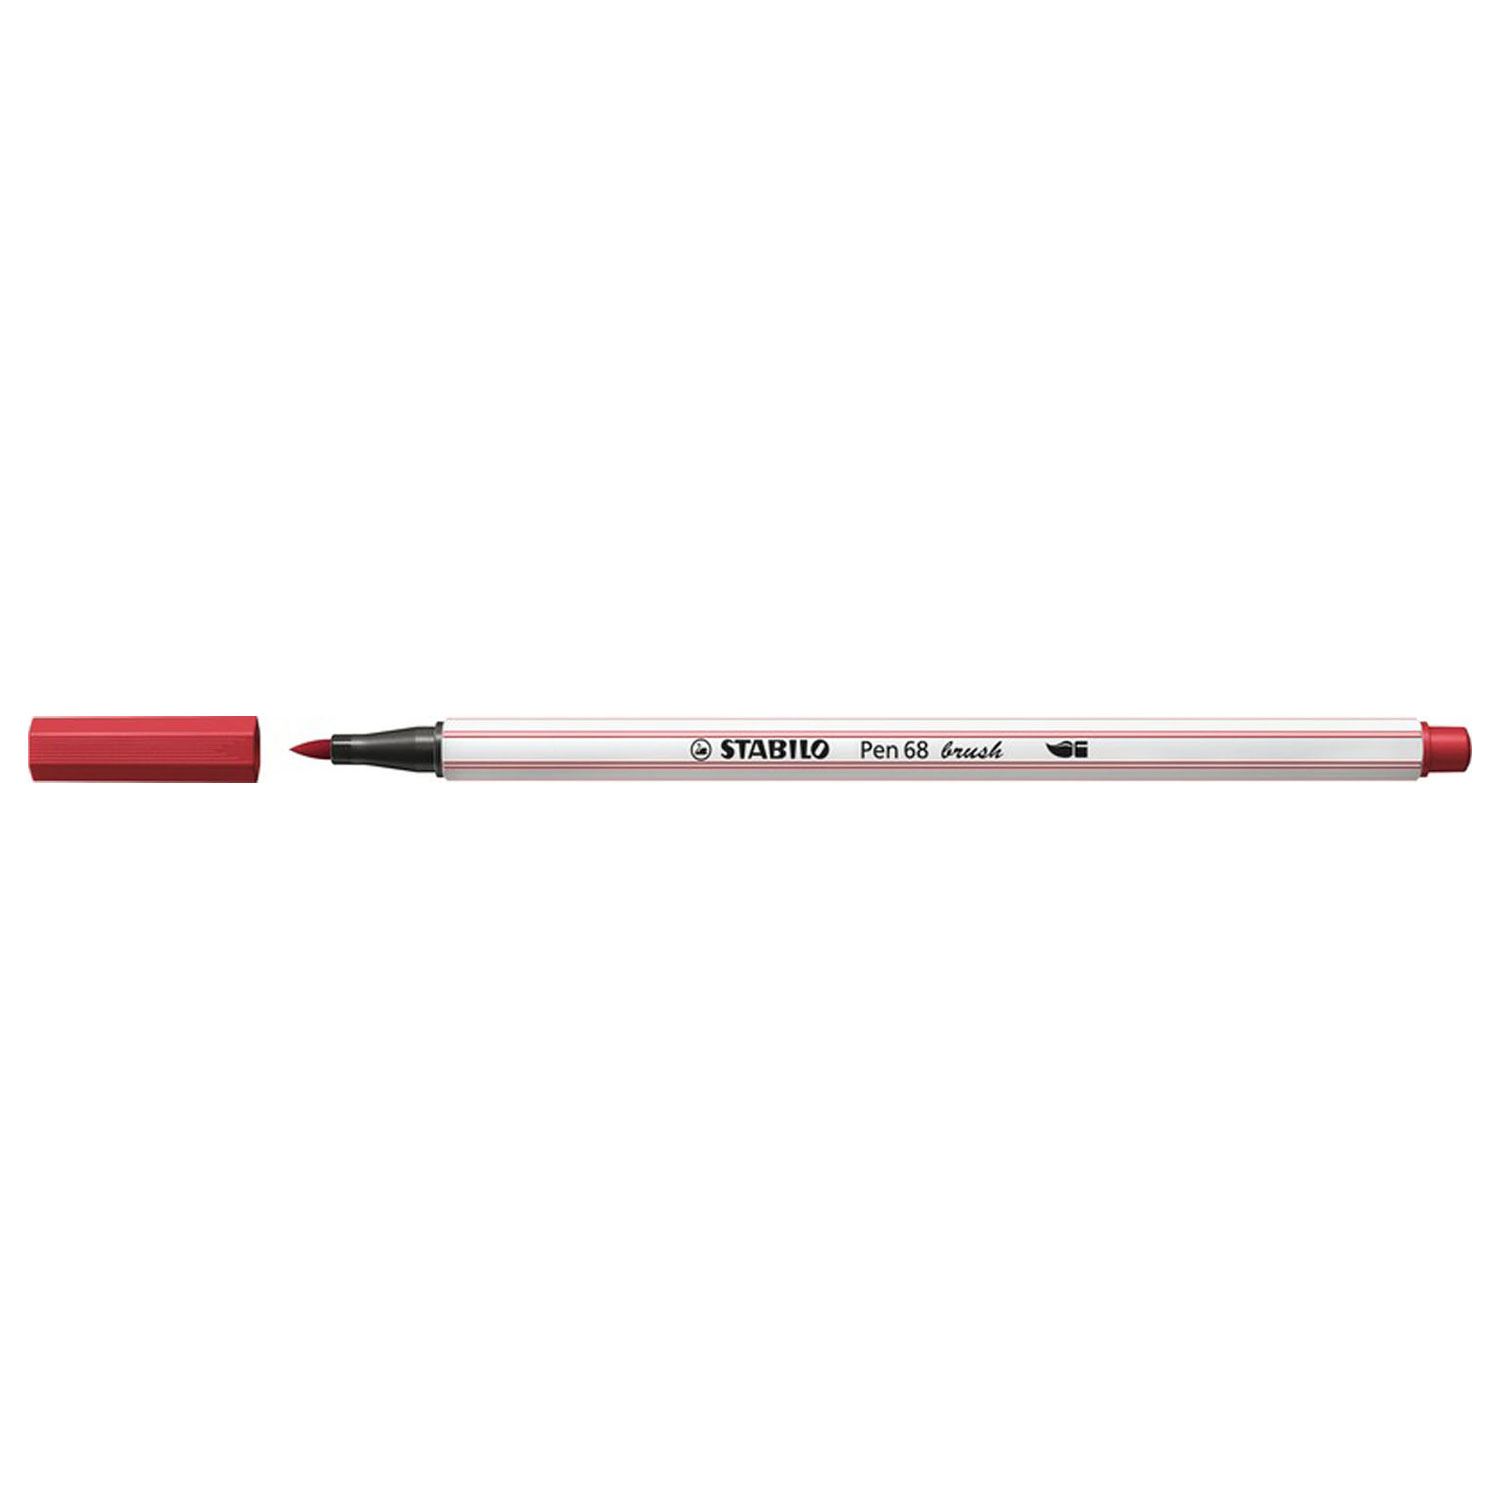 STABILO Pen 68 Brush - Premium Brush Viltstift - Met Flexibele Penseelpunt - Donker Rood - per stuk